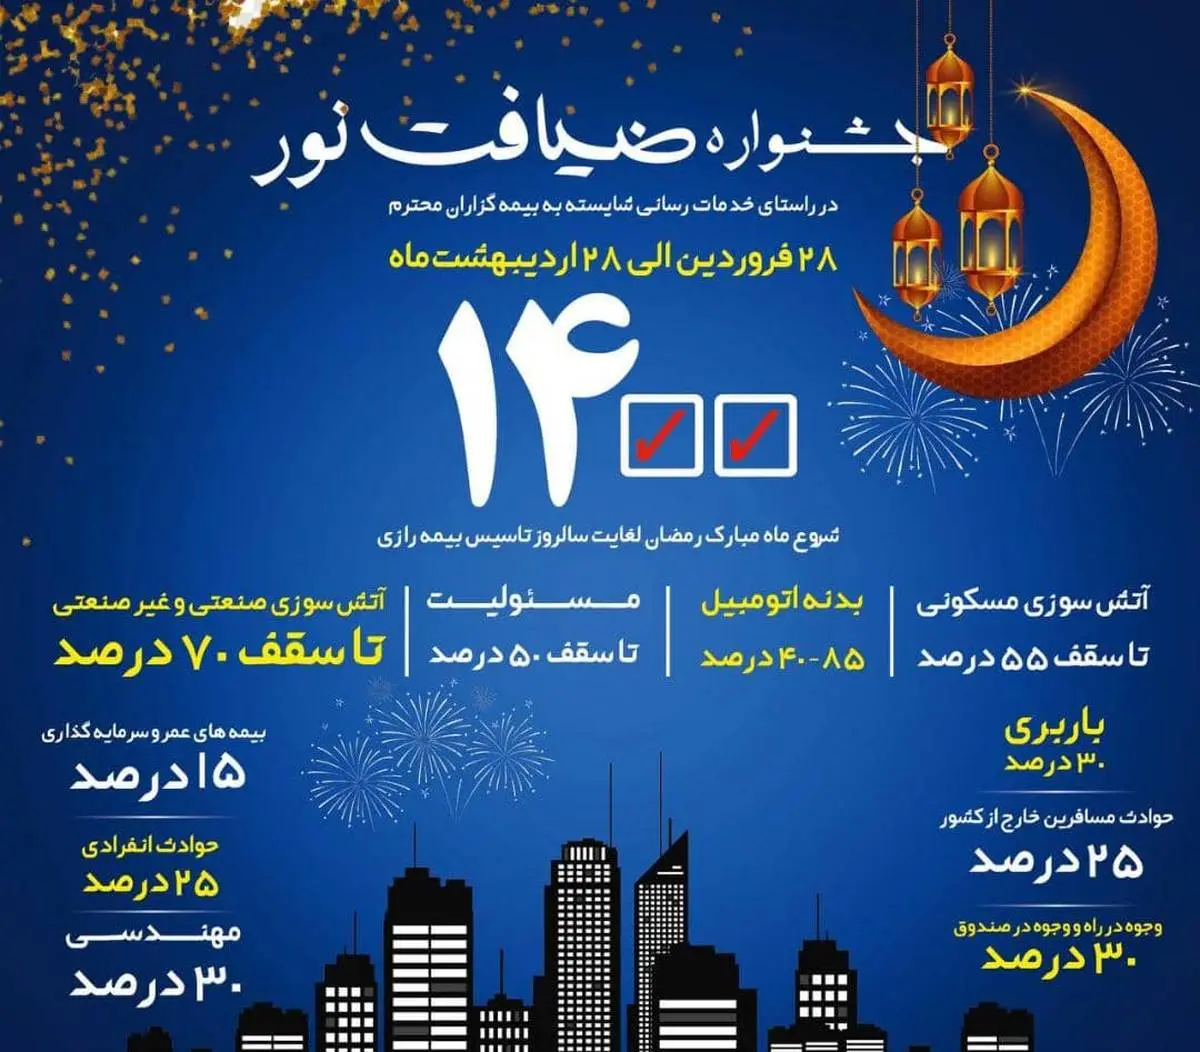 برگزاری جشنواره "ضیافت نور " بیمه رازی با تخفیفات ویژه 